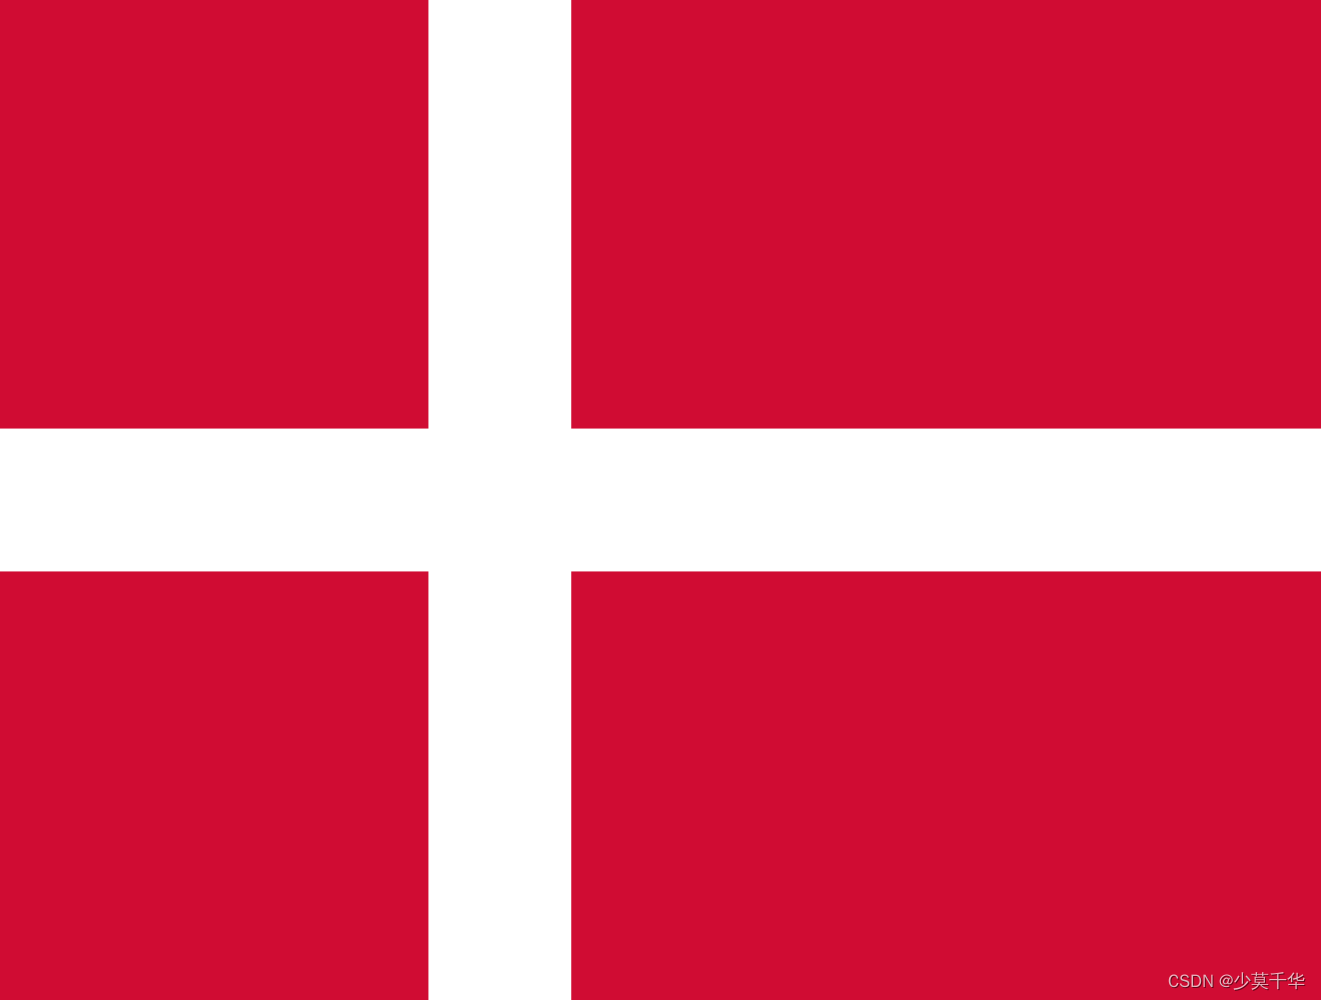 017.丹麦-丹麦王国